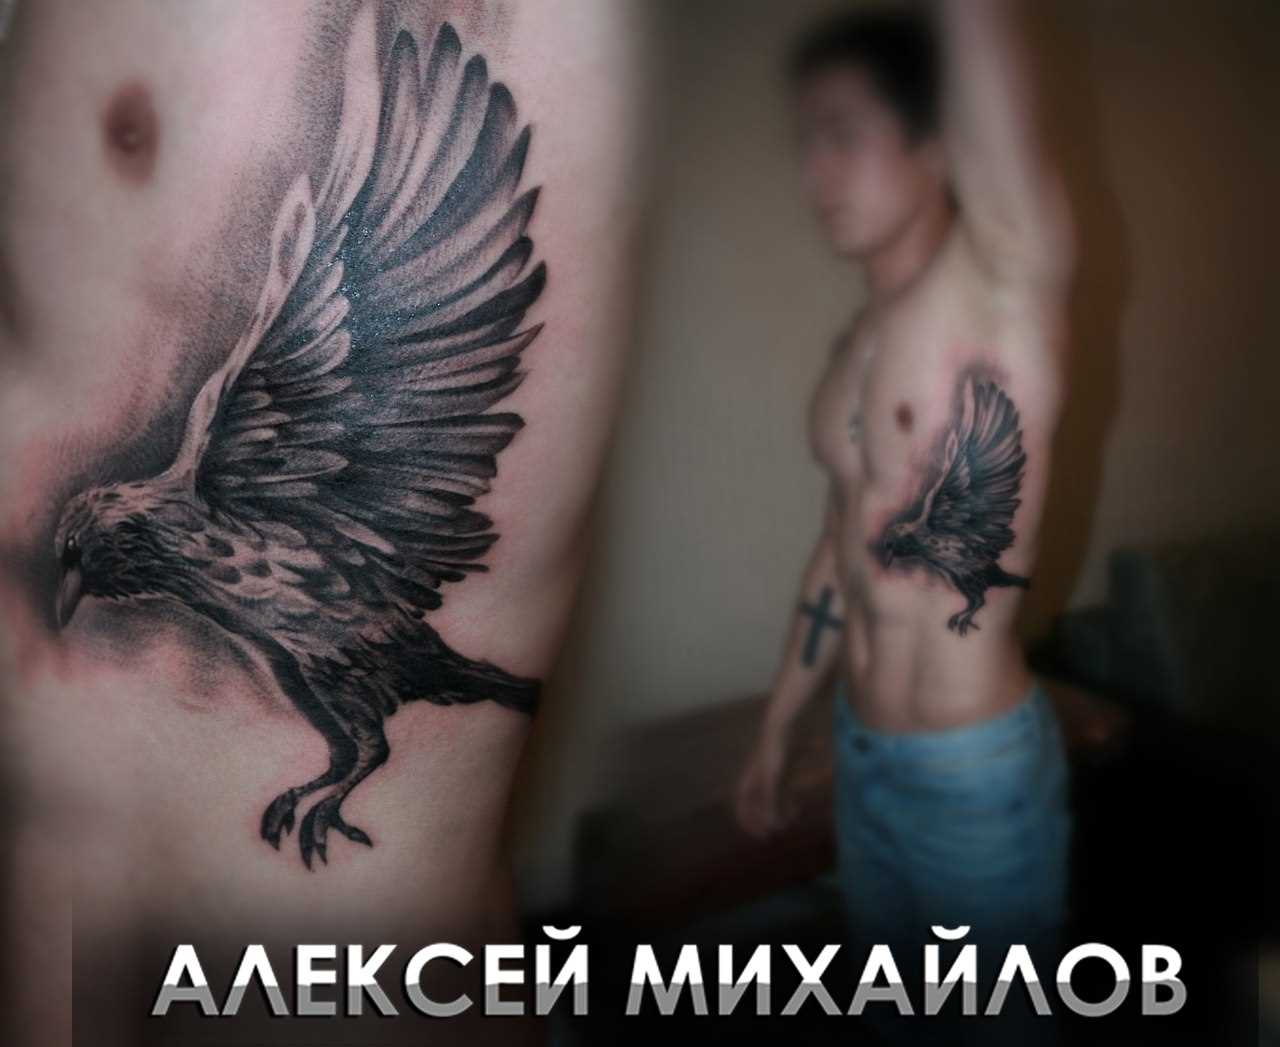 A tatuagem no lado do cara - o corvo